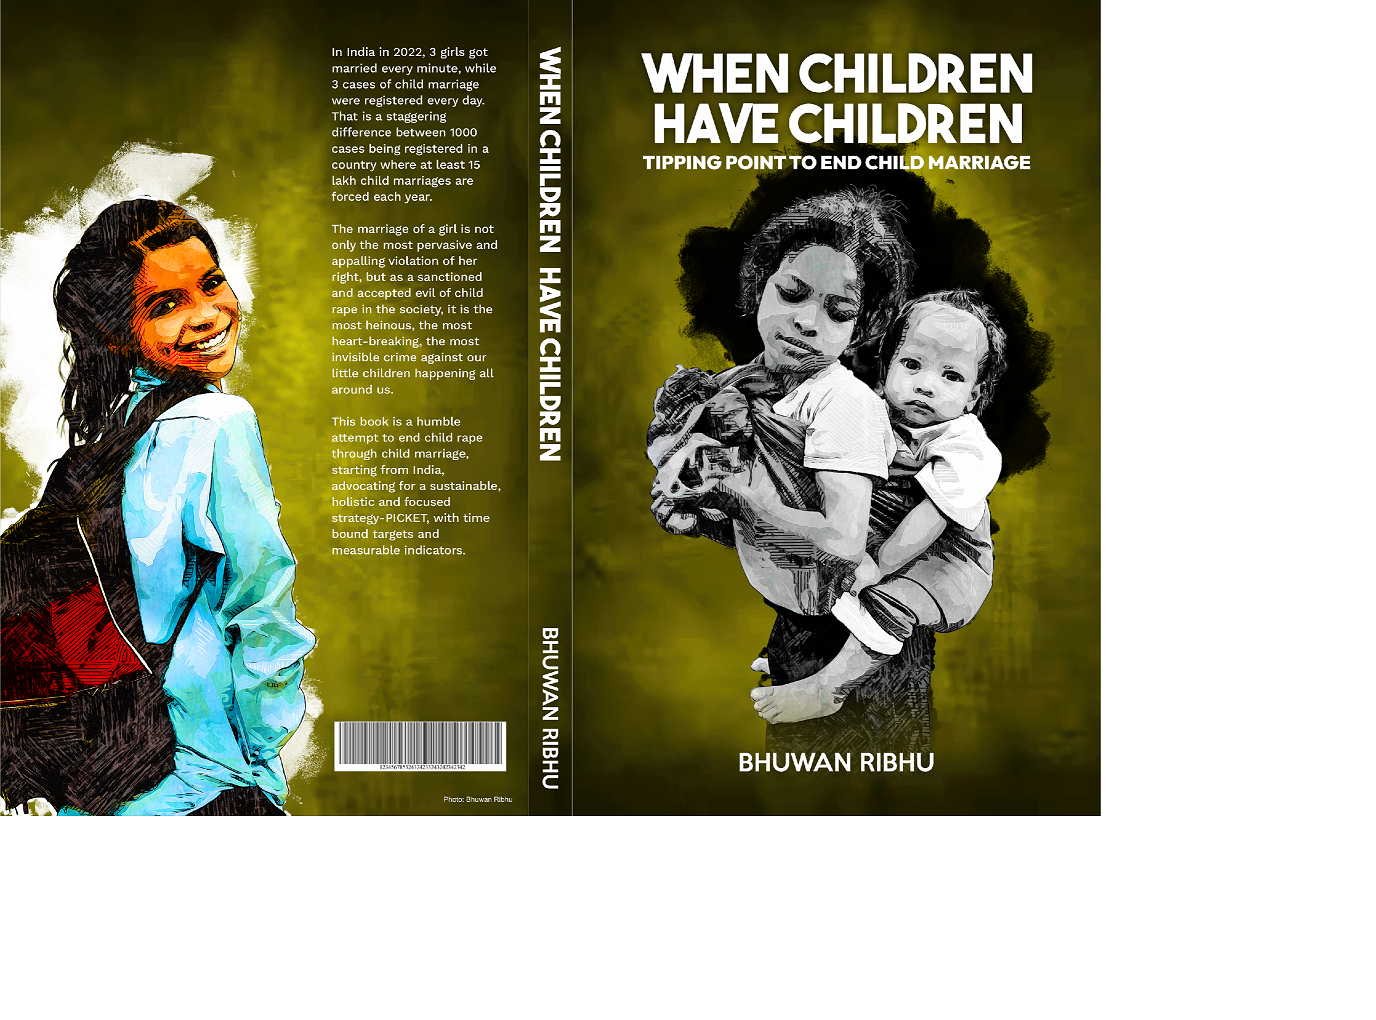 Child Marriage Free India 2030 Book When Children Have Children by Bhuwan ribhu